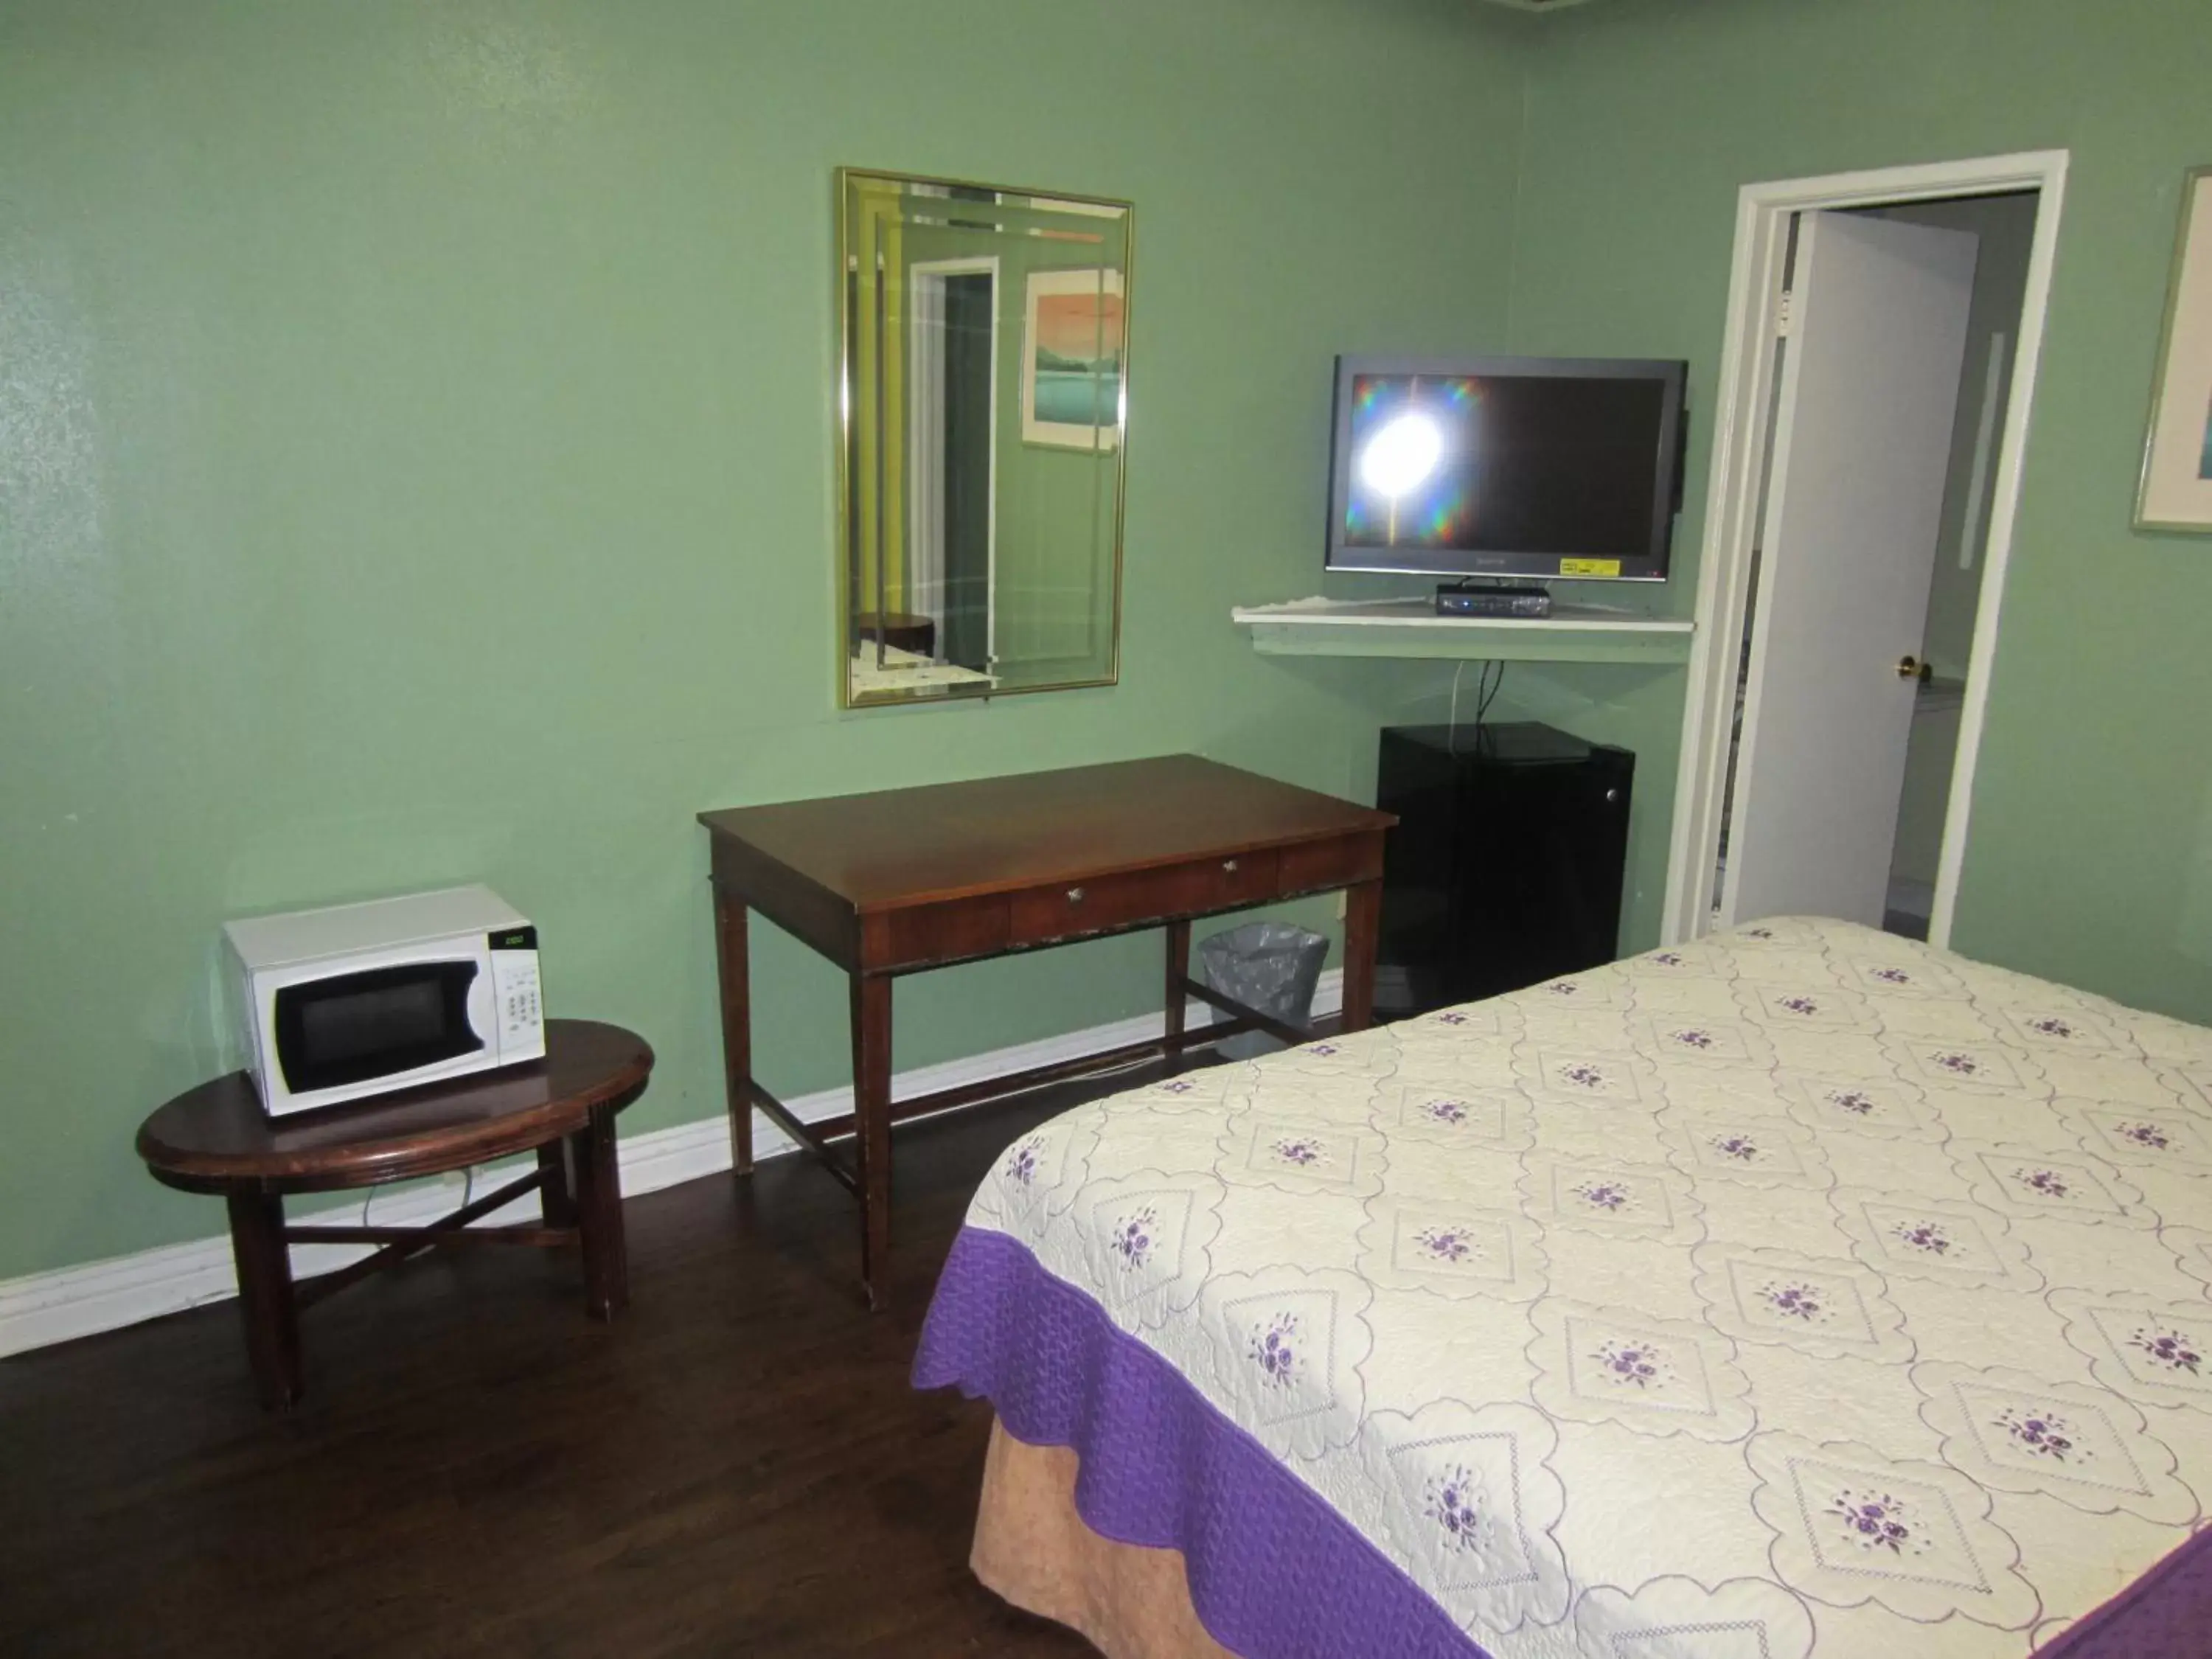 Bedroom, TV/Entertainment Center in Travel Eagle Inn Motel